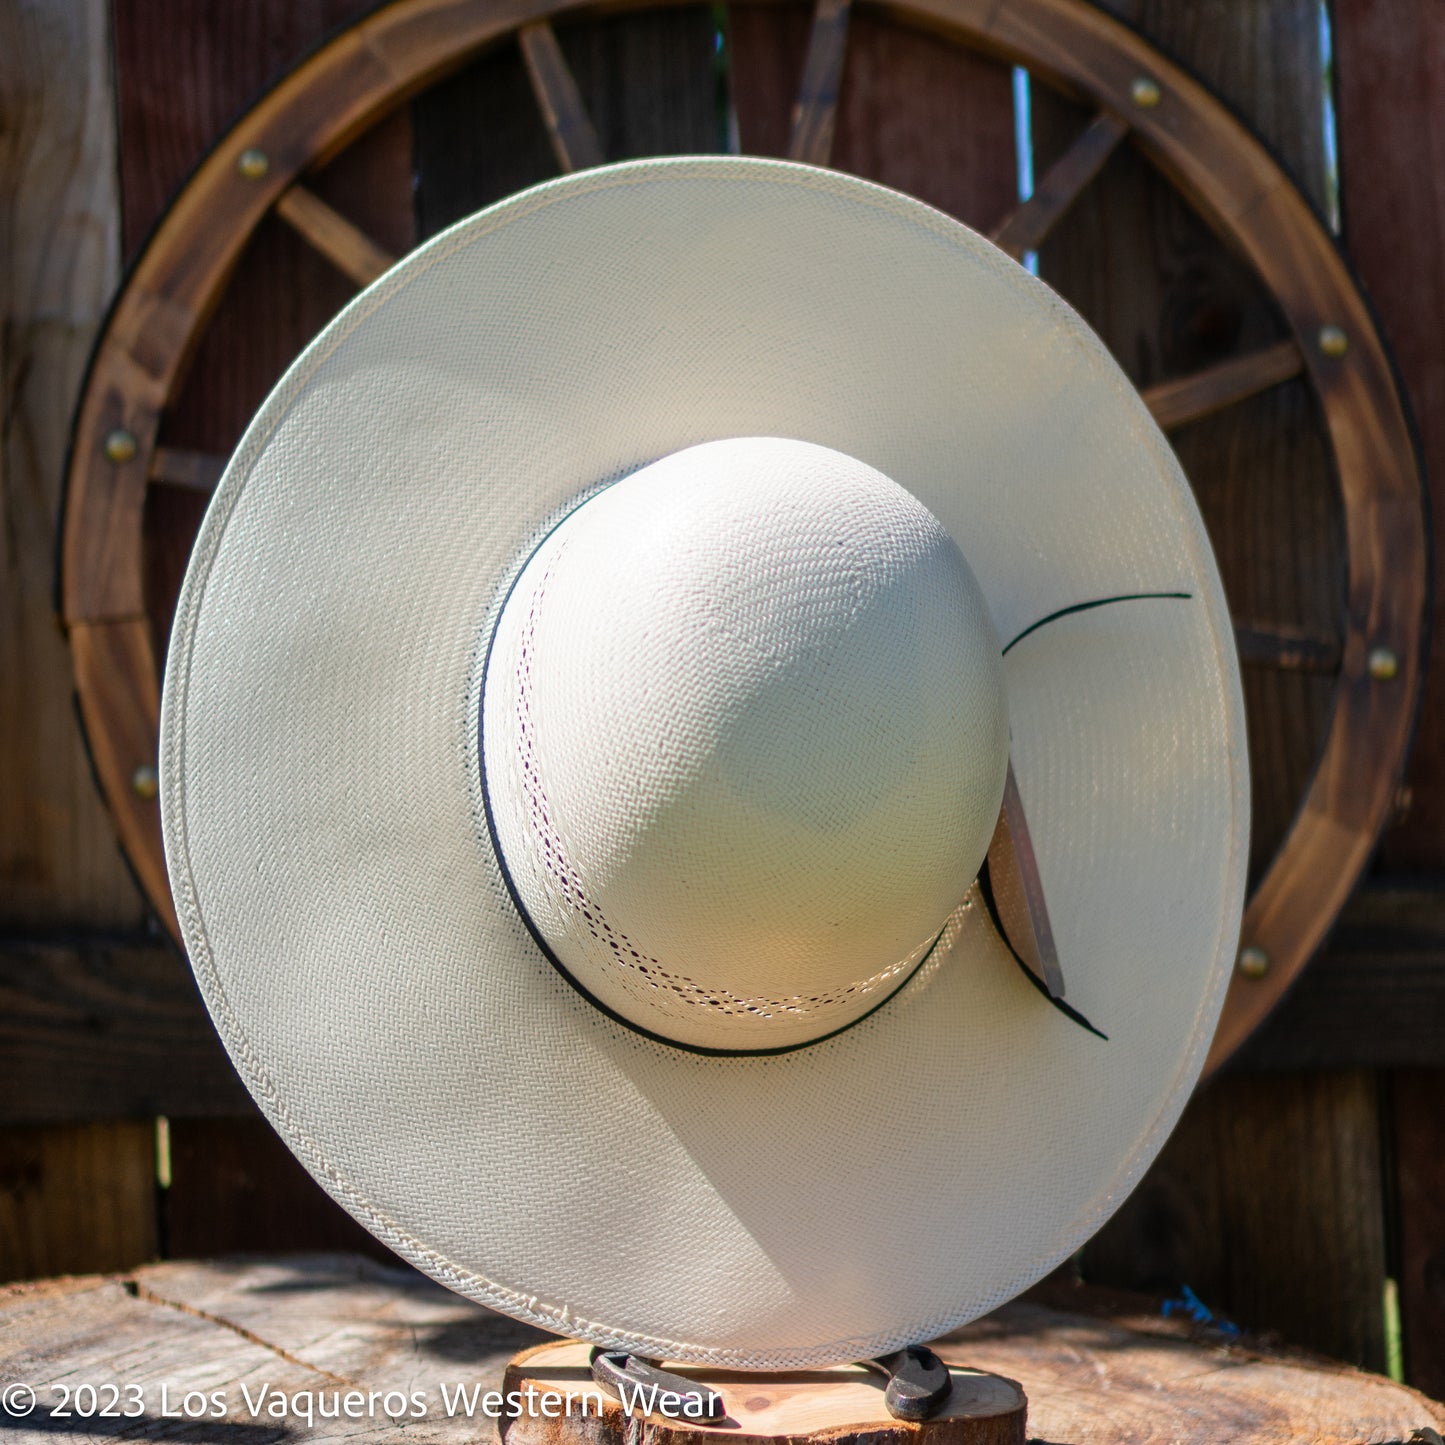 Valtierra Straw Hat Regular Crown Short Horn White